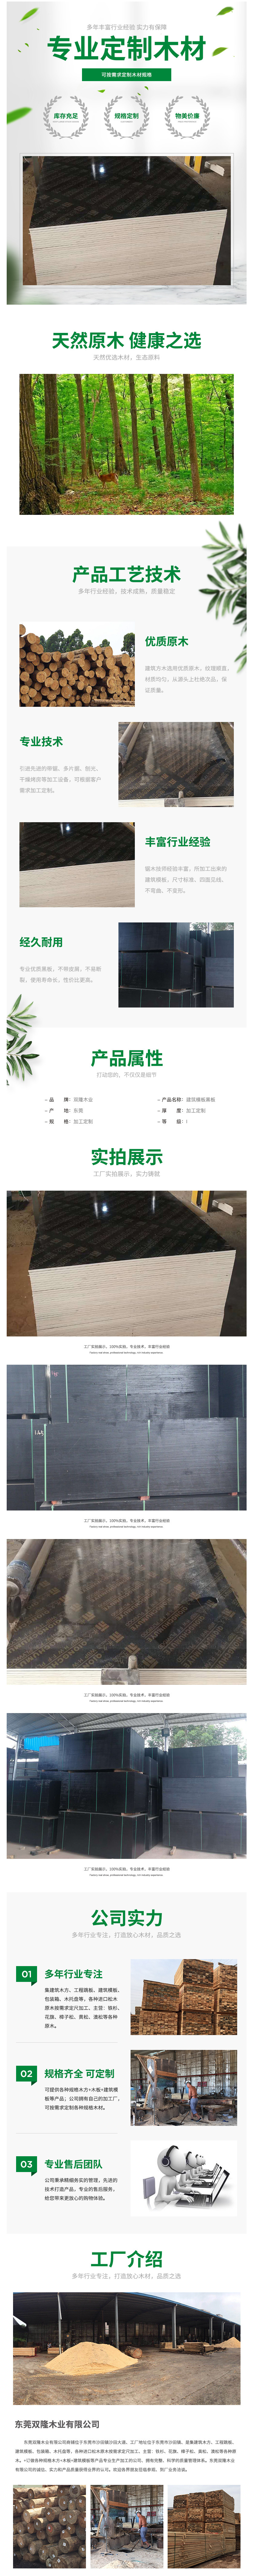 建筑覆膜板 1830_915_14.5 胶合板双面木模板木方 防水建筑模板-阿里巴巴.png